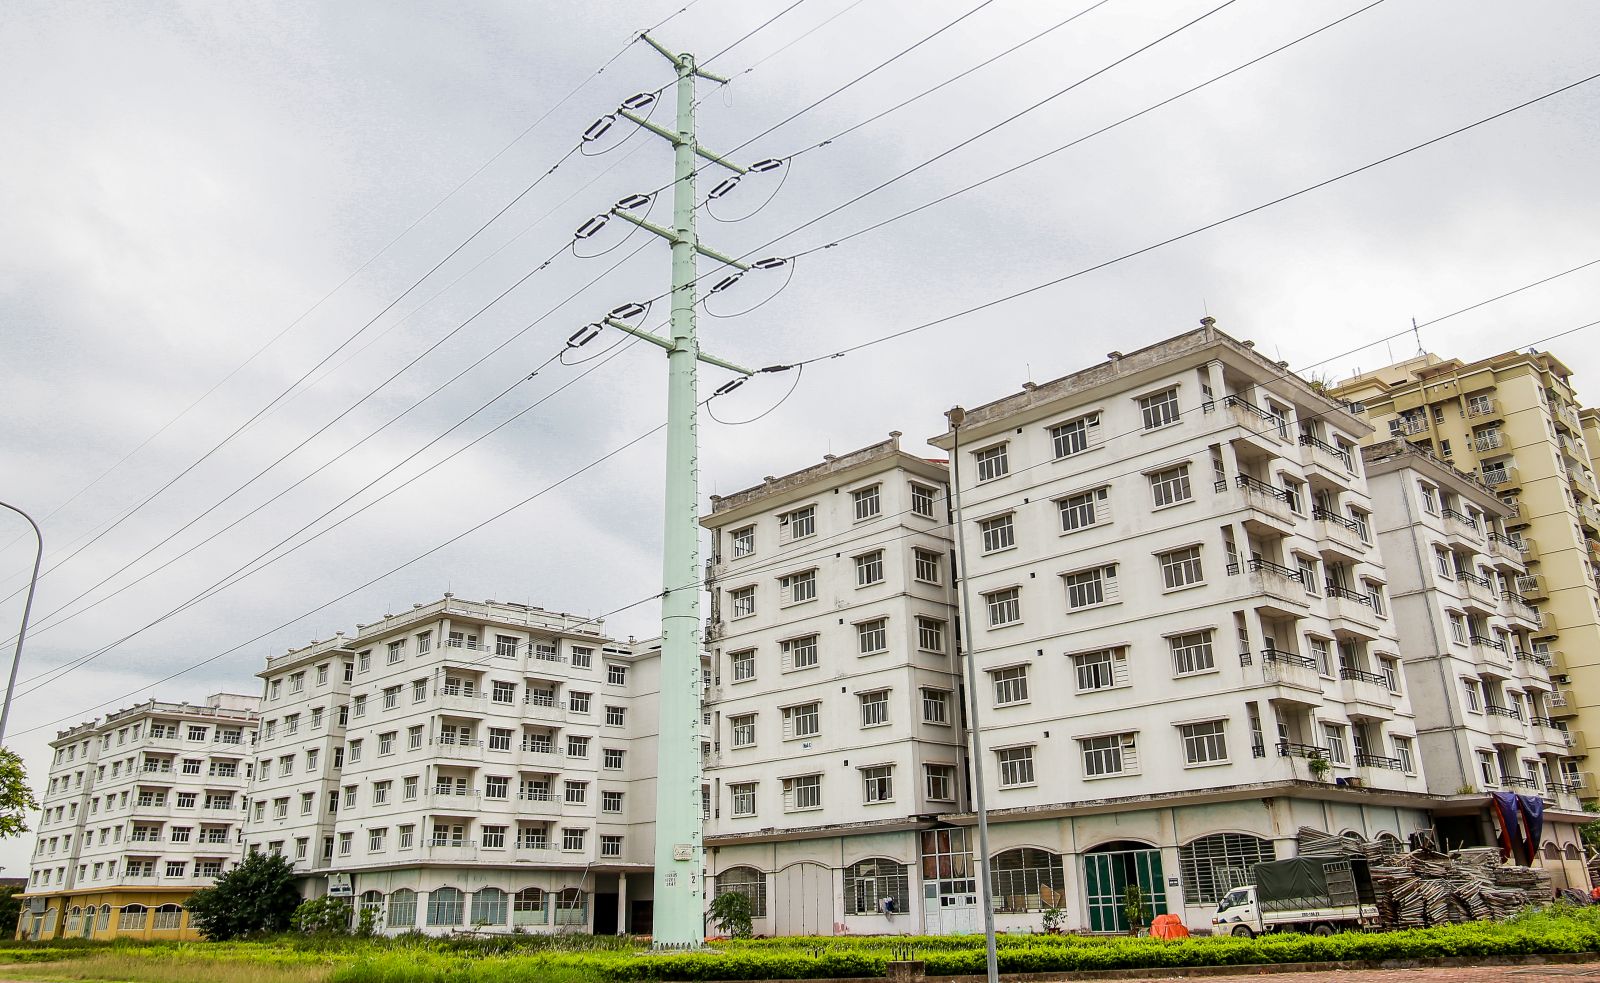 Dự án nhà tái định cư thuộc khu đô thị mới Sài Đồng được triển khai từ năm 2001 - 2006 với tổng số 150 căn hộ, nhằm mục đích tái định cư tại chỗ khi triển khai giải phóng mặt bằng, mở rộng tuyến phố Sài Đồng (Long Biên, Hà Nội).